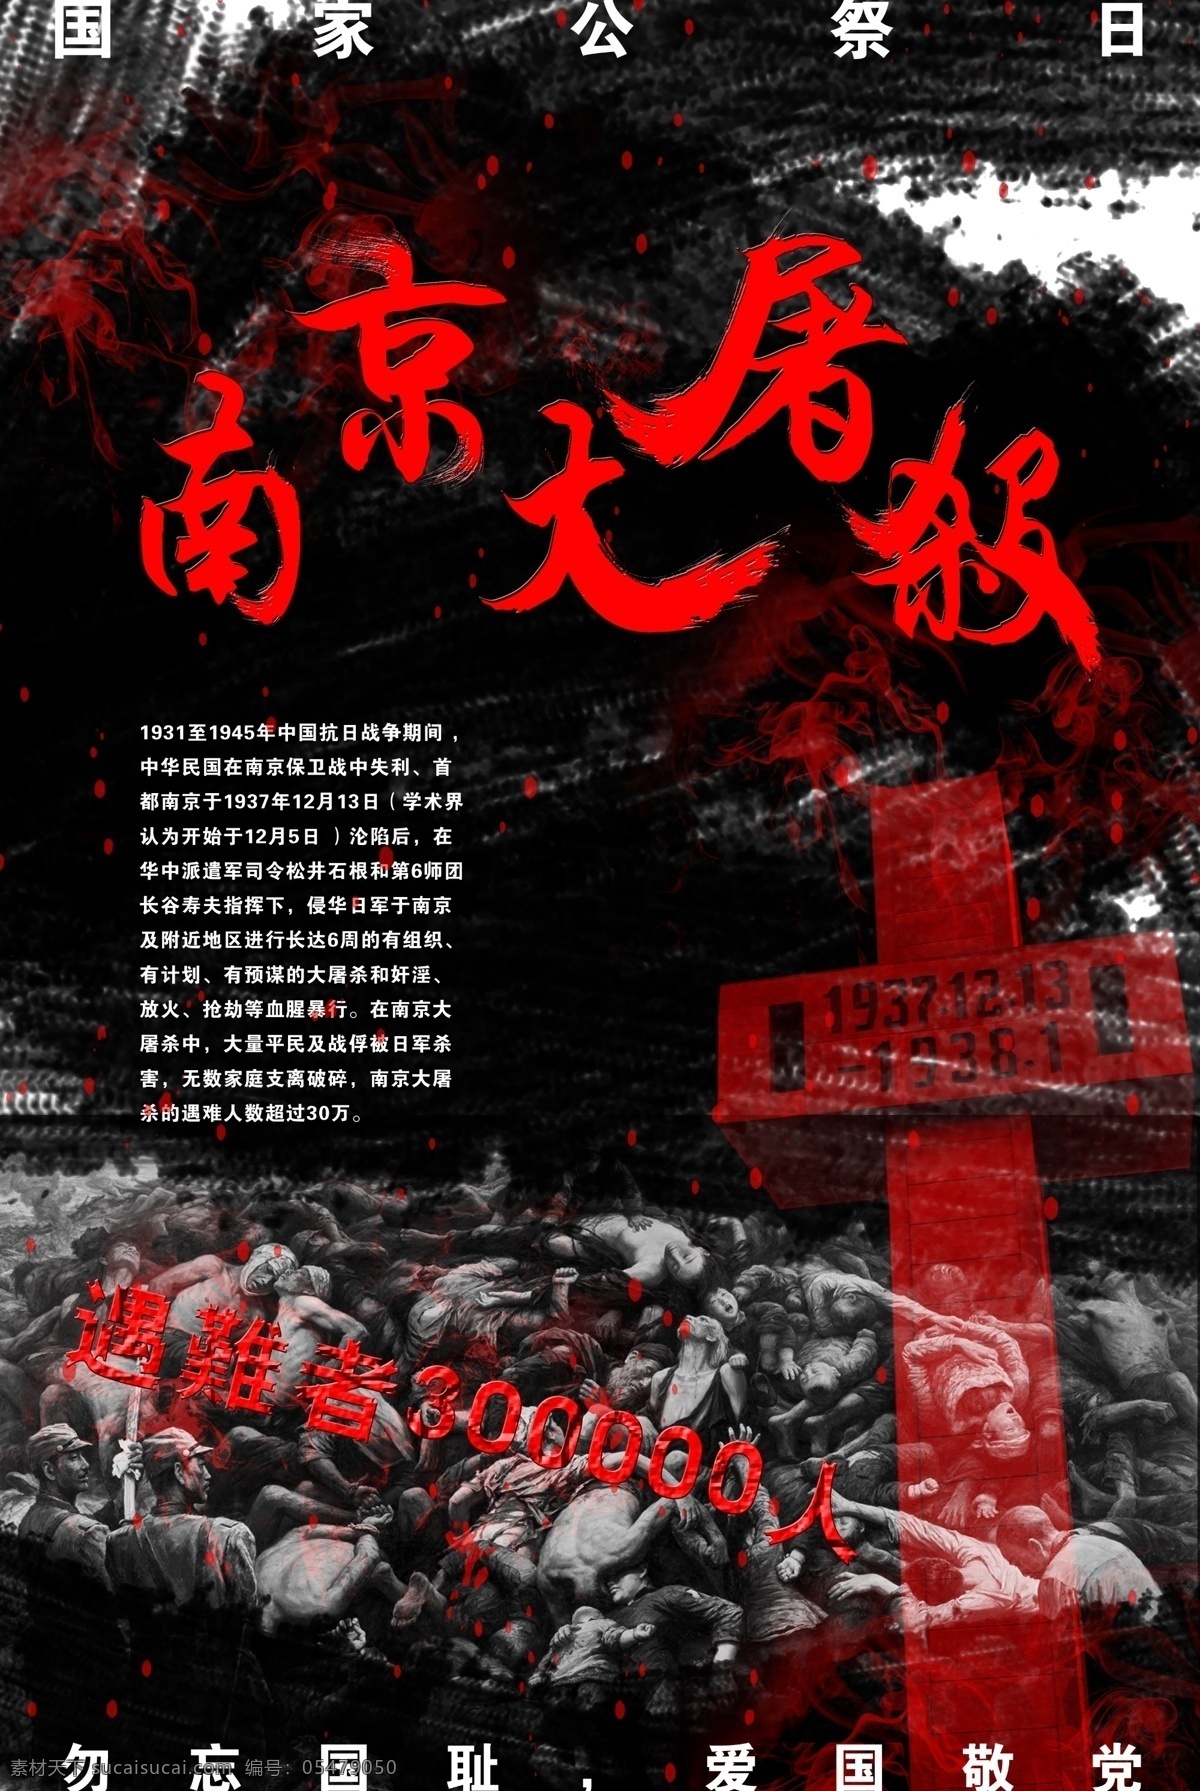 南京大屠杀 纪念 海报 国家公祭日 12月13日 革命 无 彩色 对比